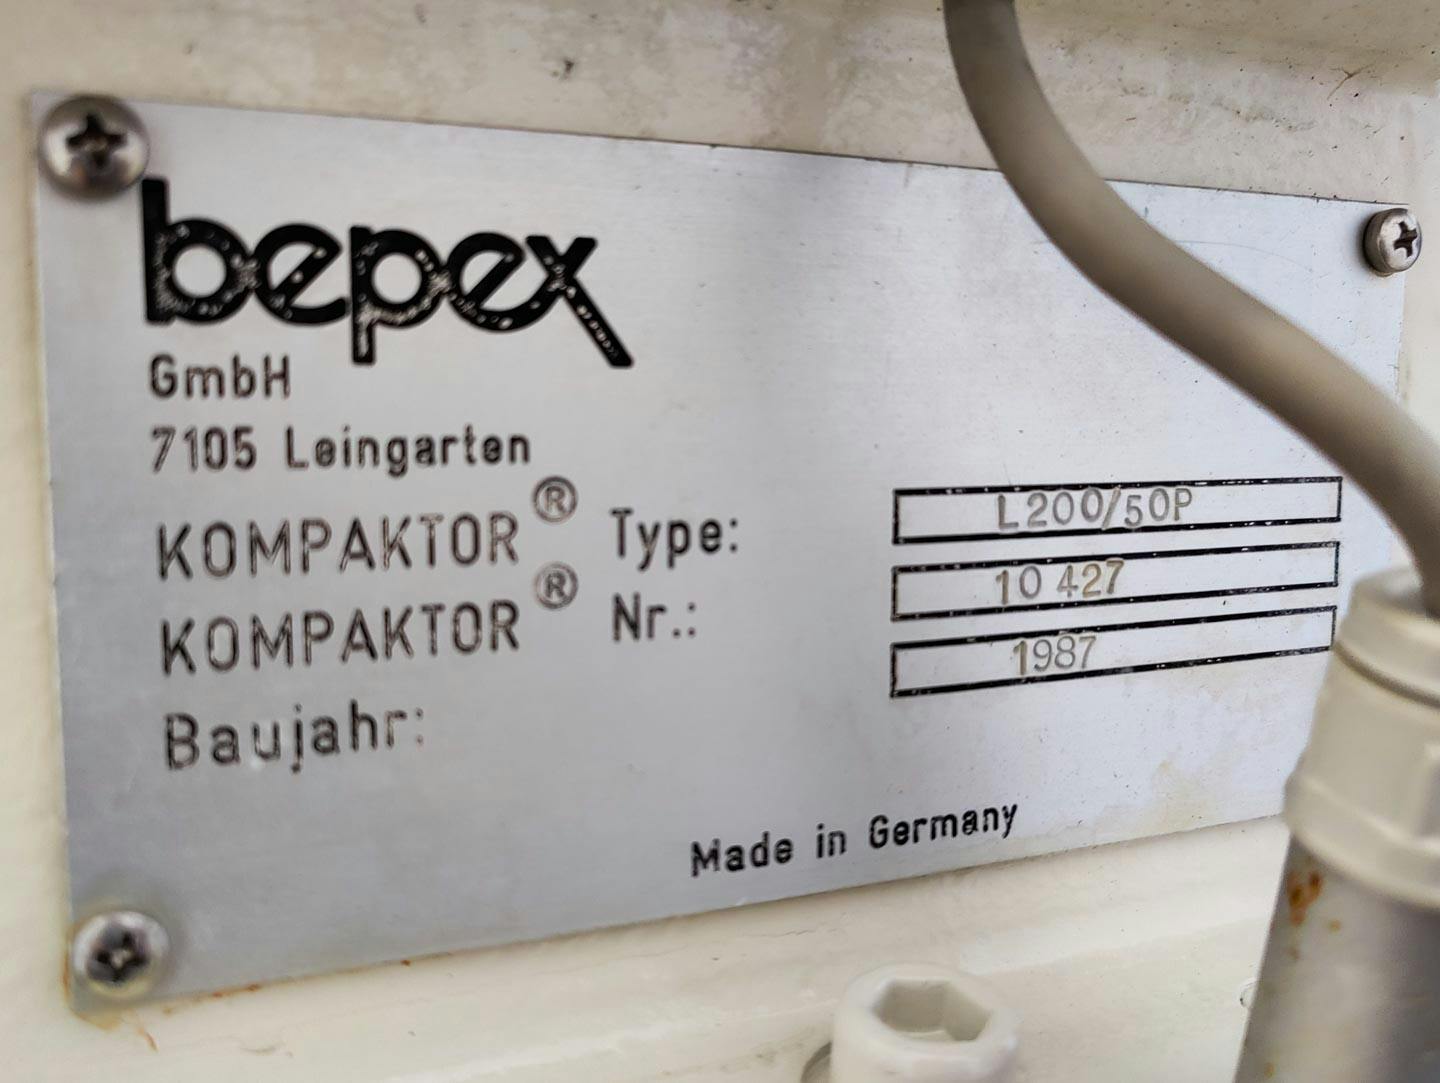 Bepex L-200/50P - Compattatore a rulli - image 14